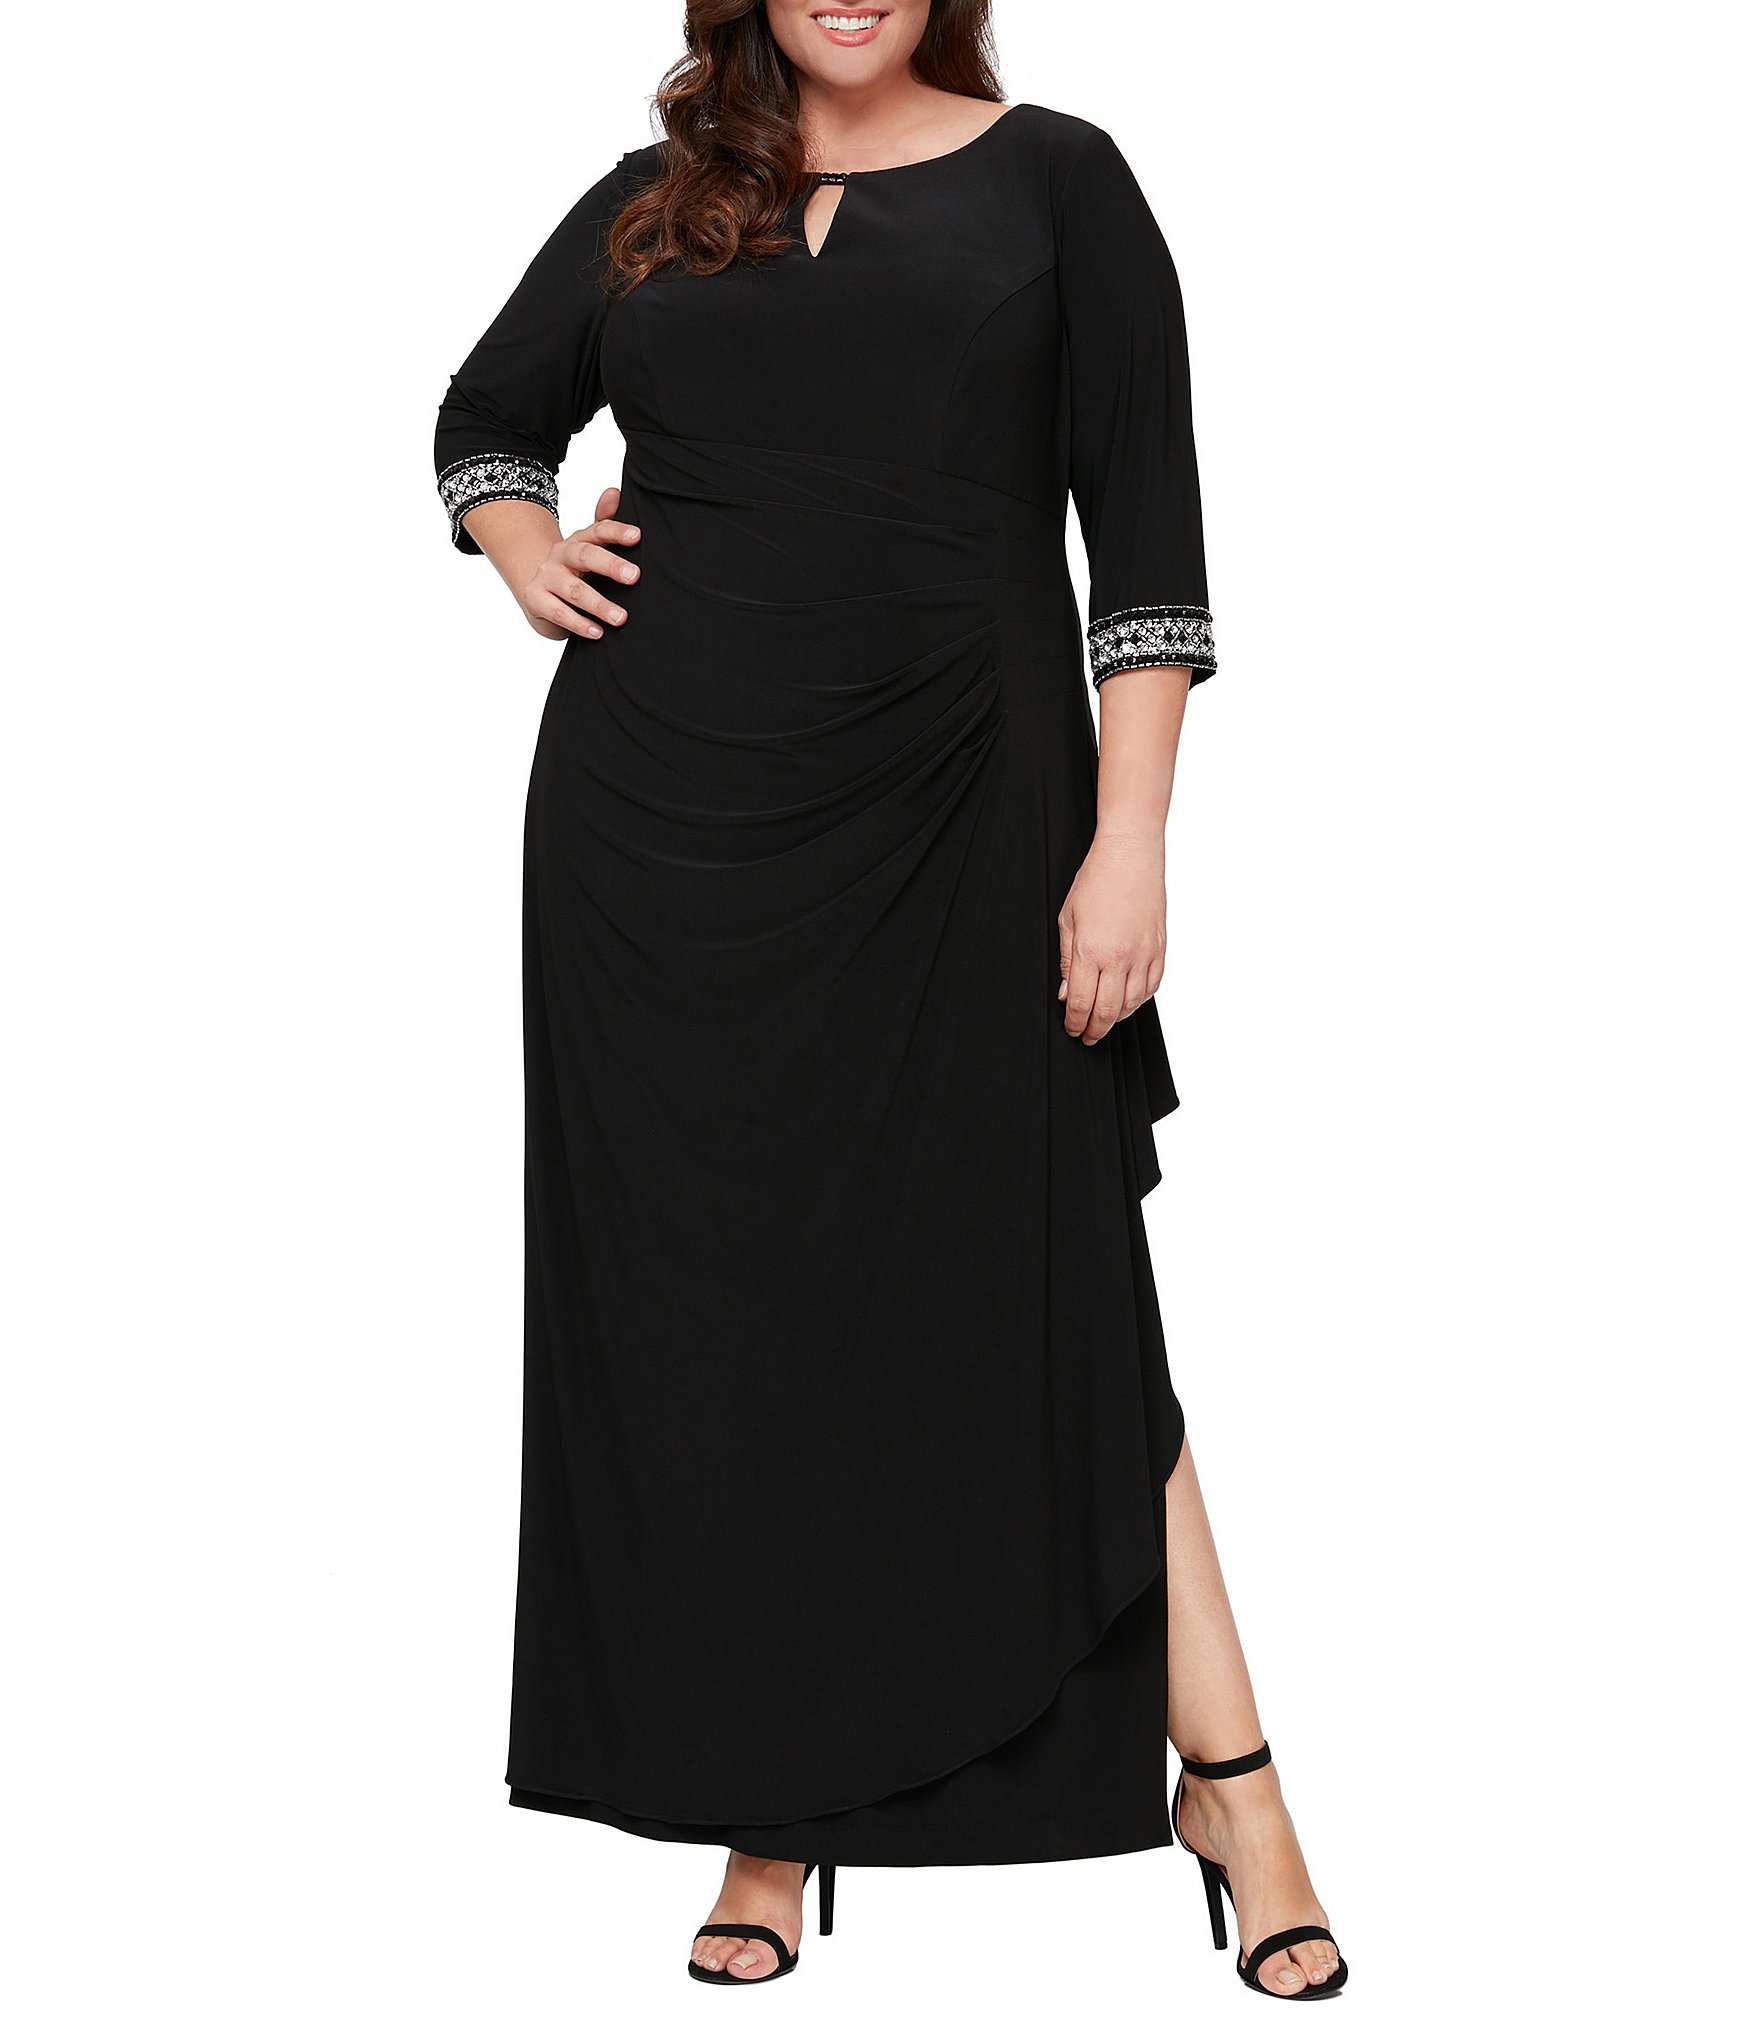 Black Plus-Size Gowns ☀ Formal Dresses ...